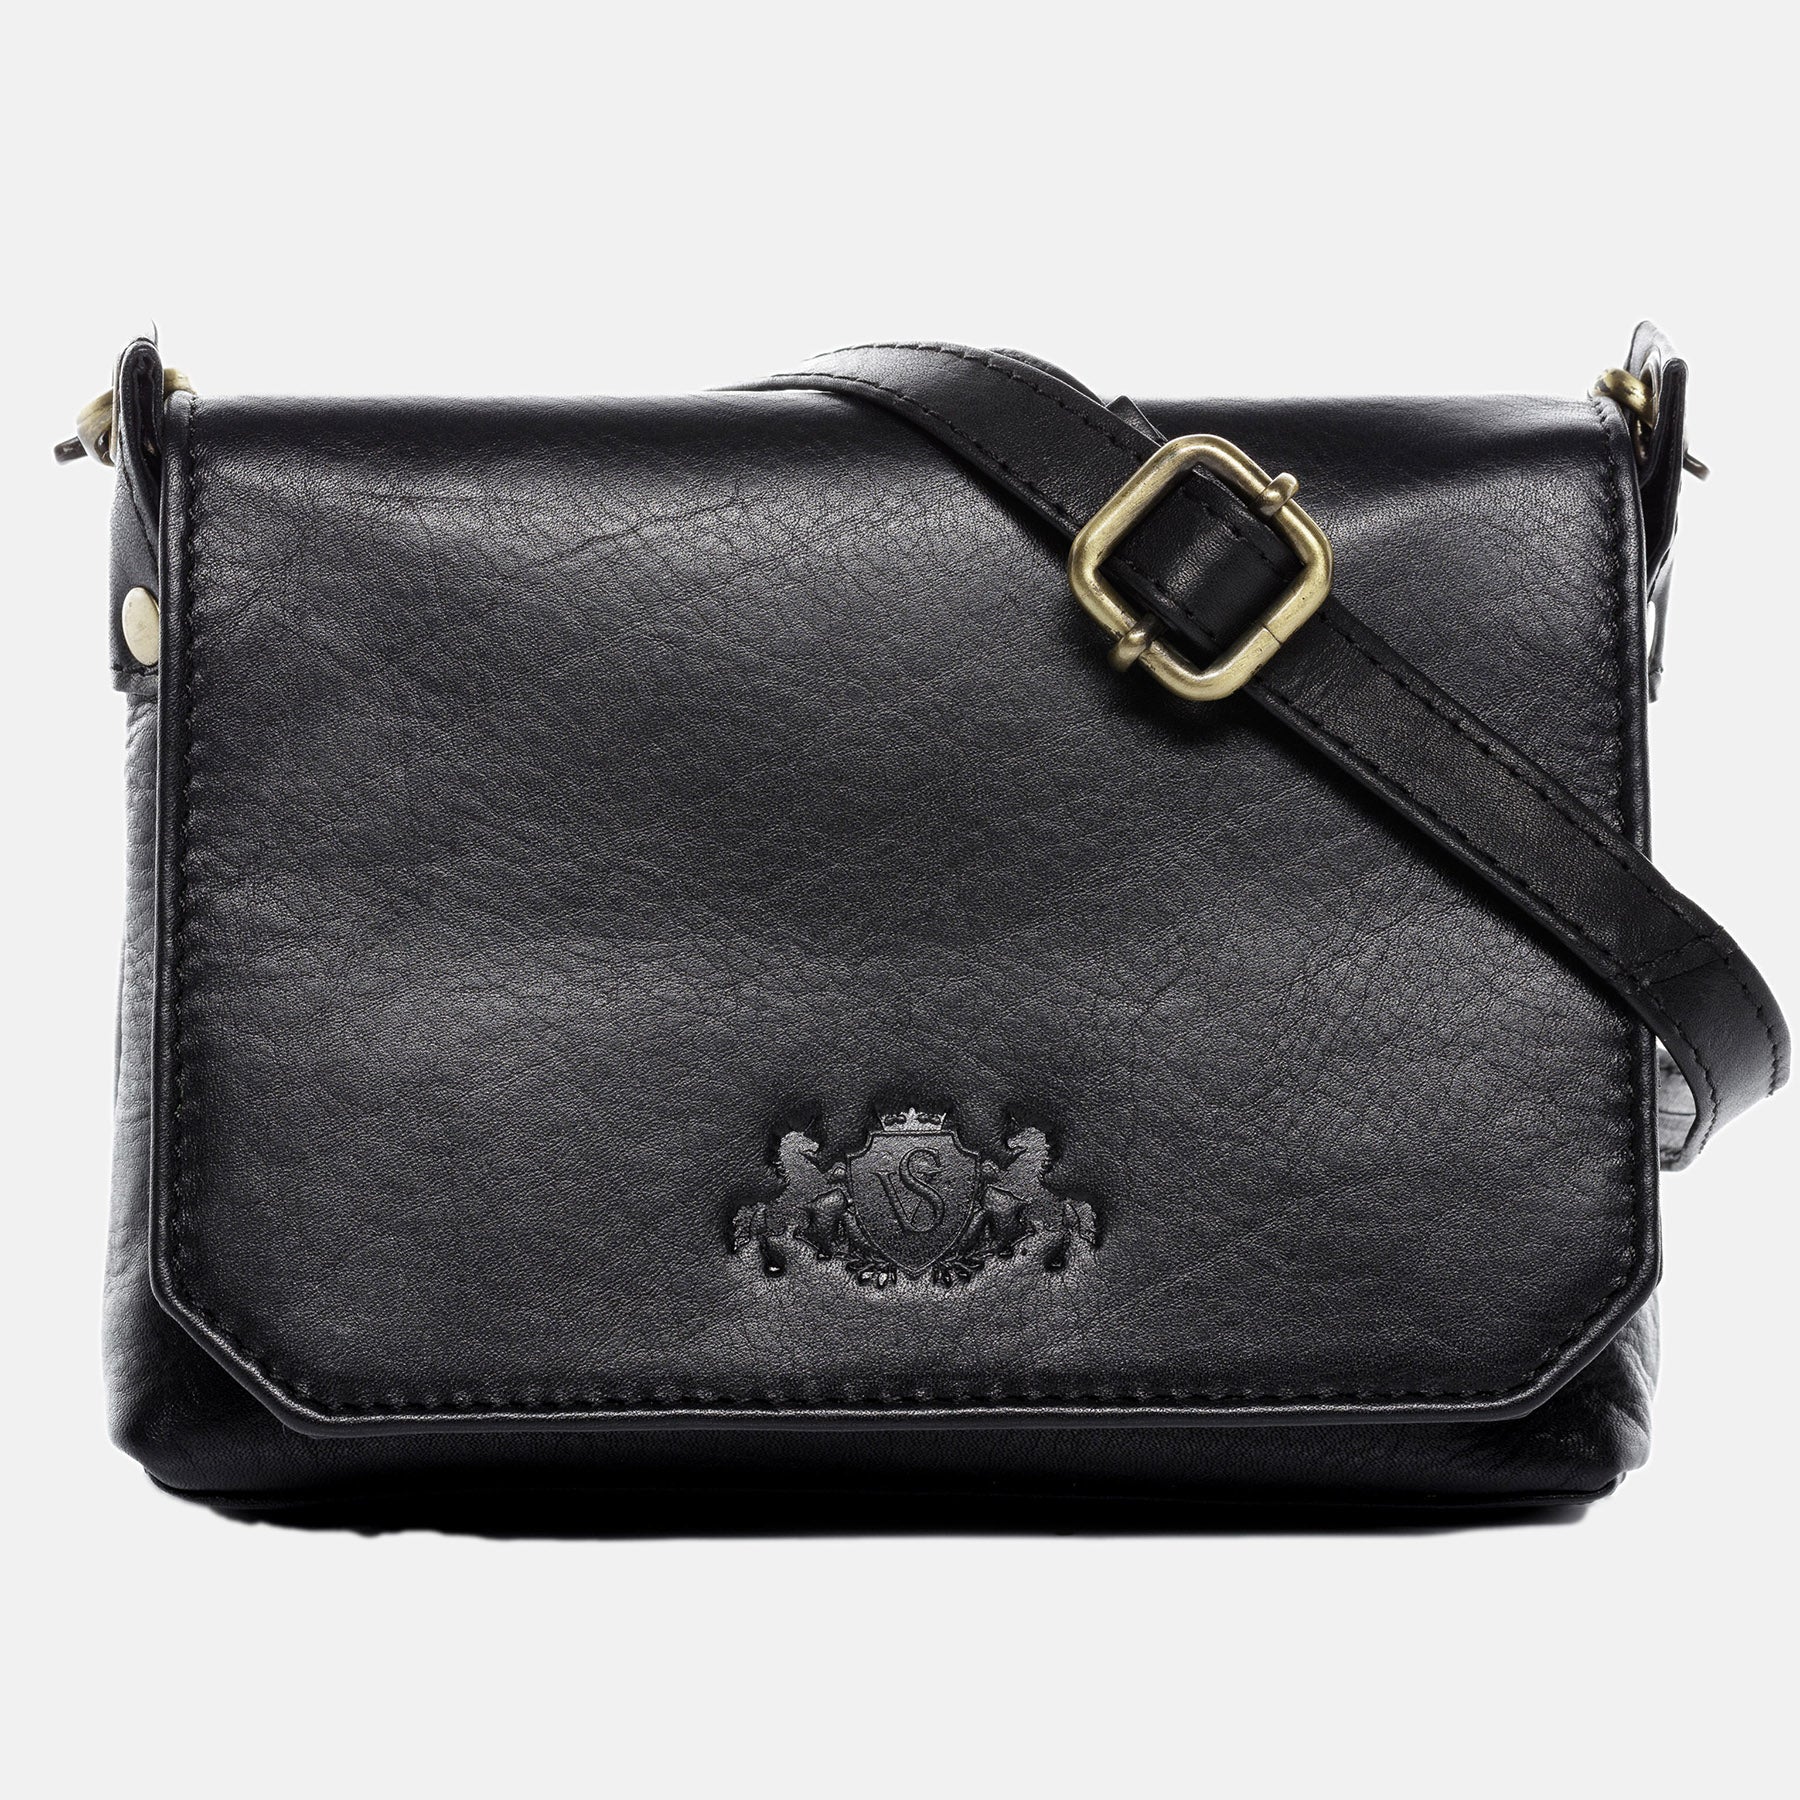 Shoulder bag KERBY smooth leather black